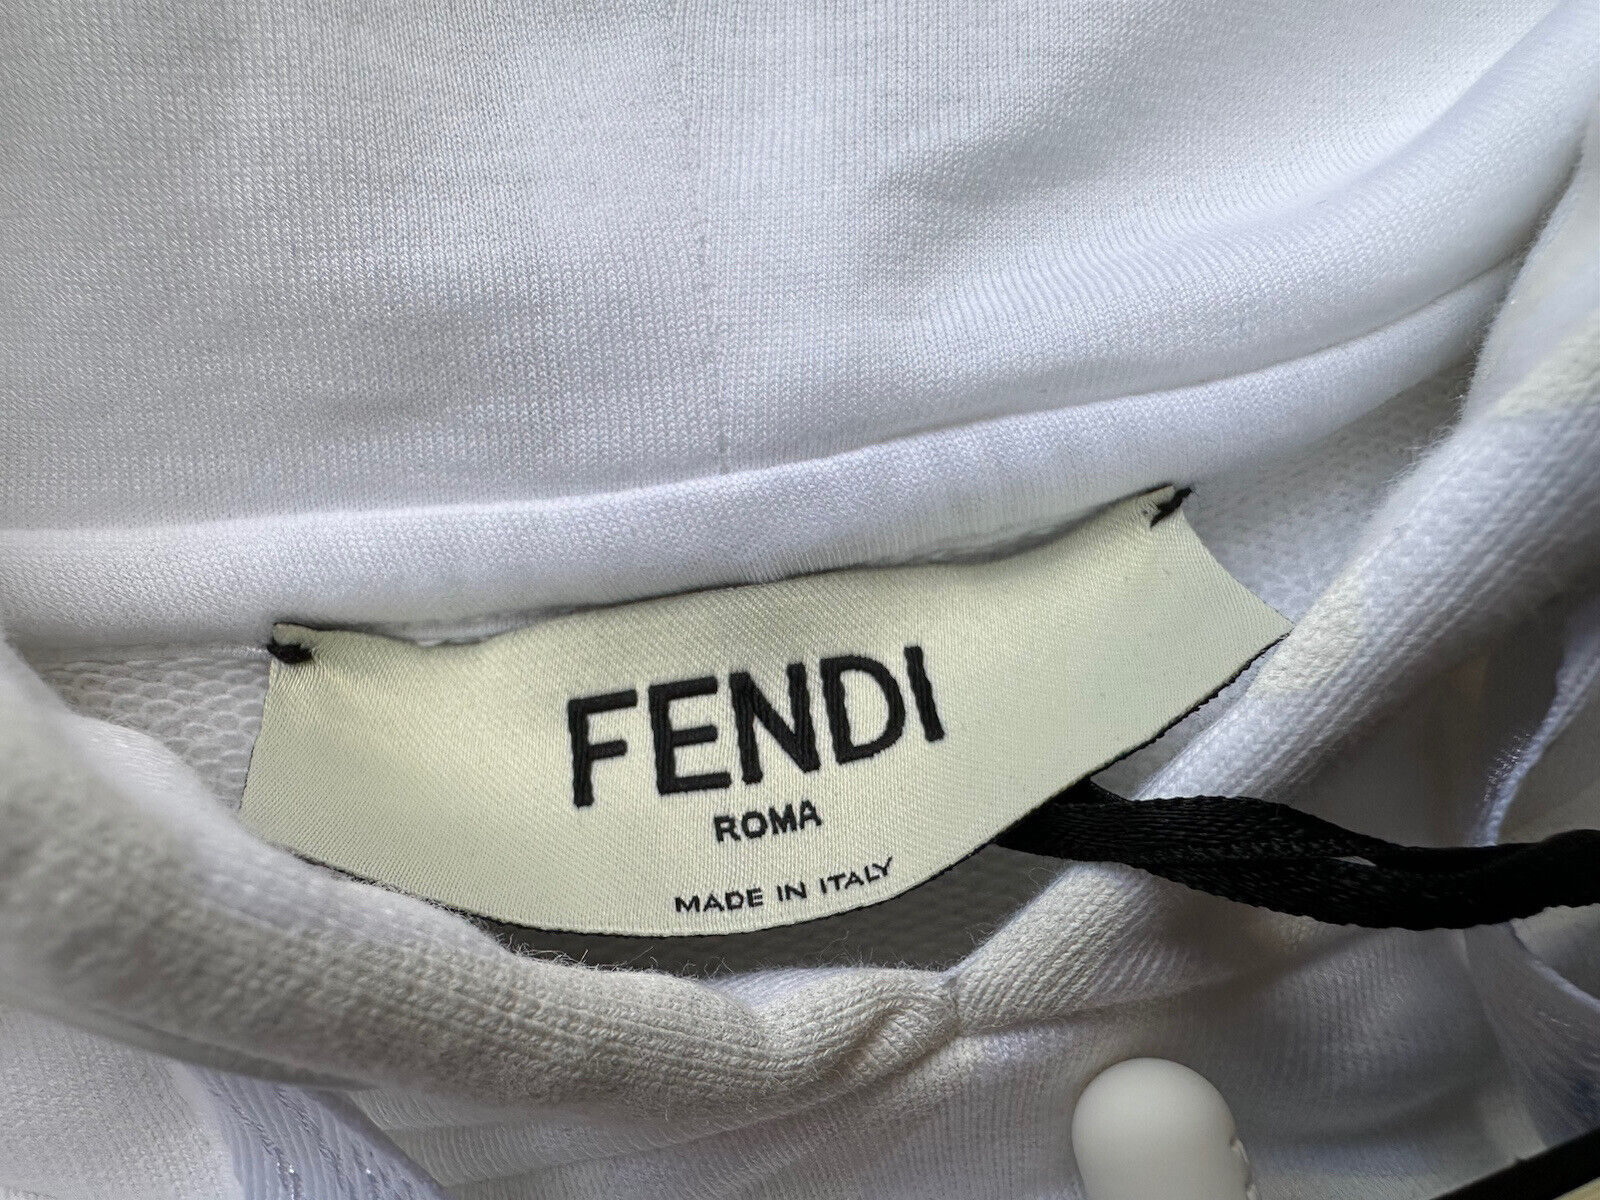 NWT 1100 долларов США Fendi Женская молочно-белая вязаная куртка Fendi с капюшоном 4 США (40 ЕС) IT 